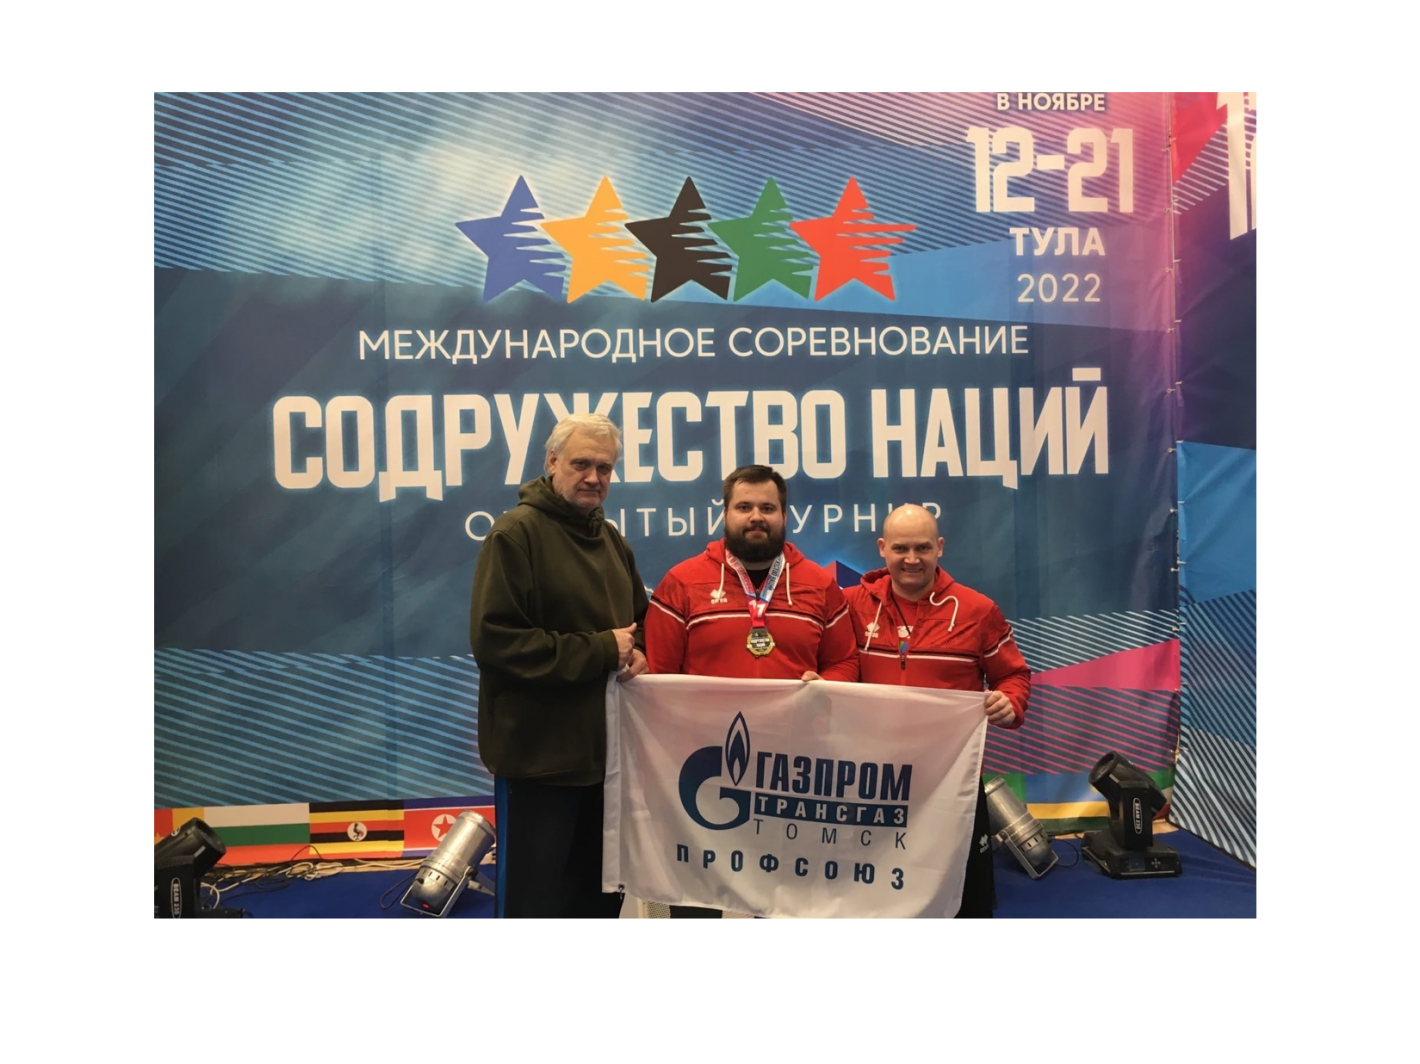 Пауэрлифтер Томской области успешно выступил на международном турнире